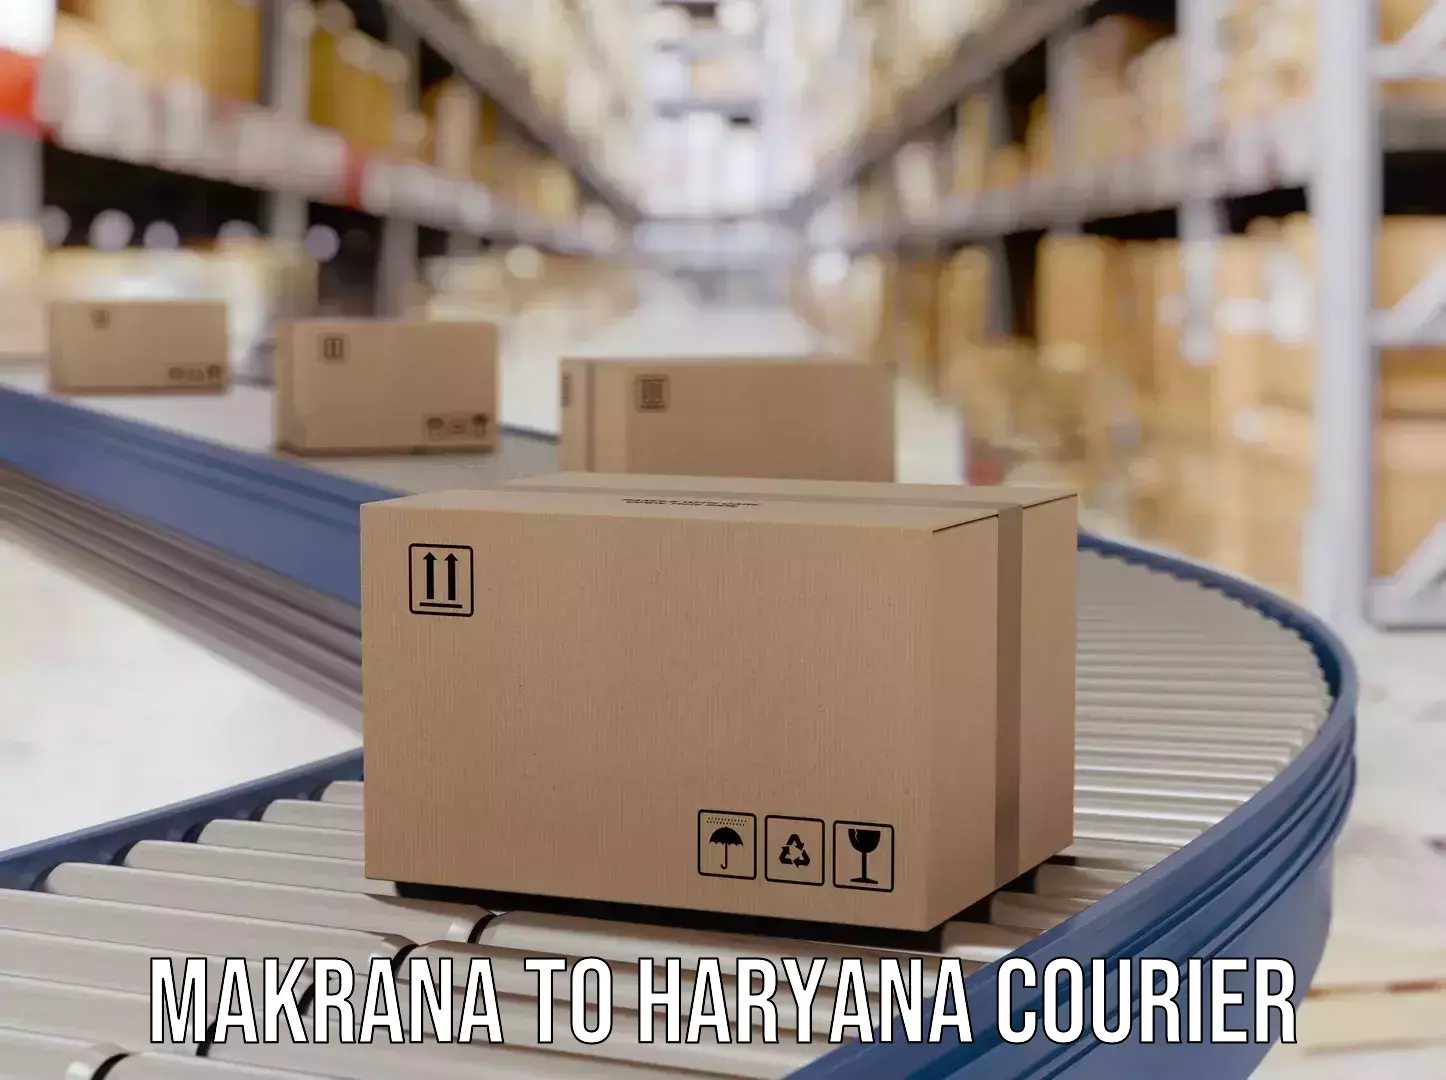 Express courier facilities Makrana to Haryana